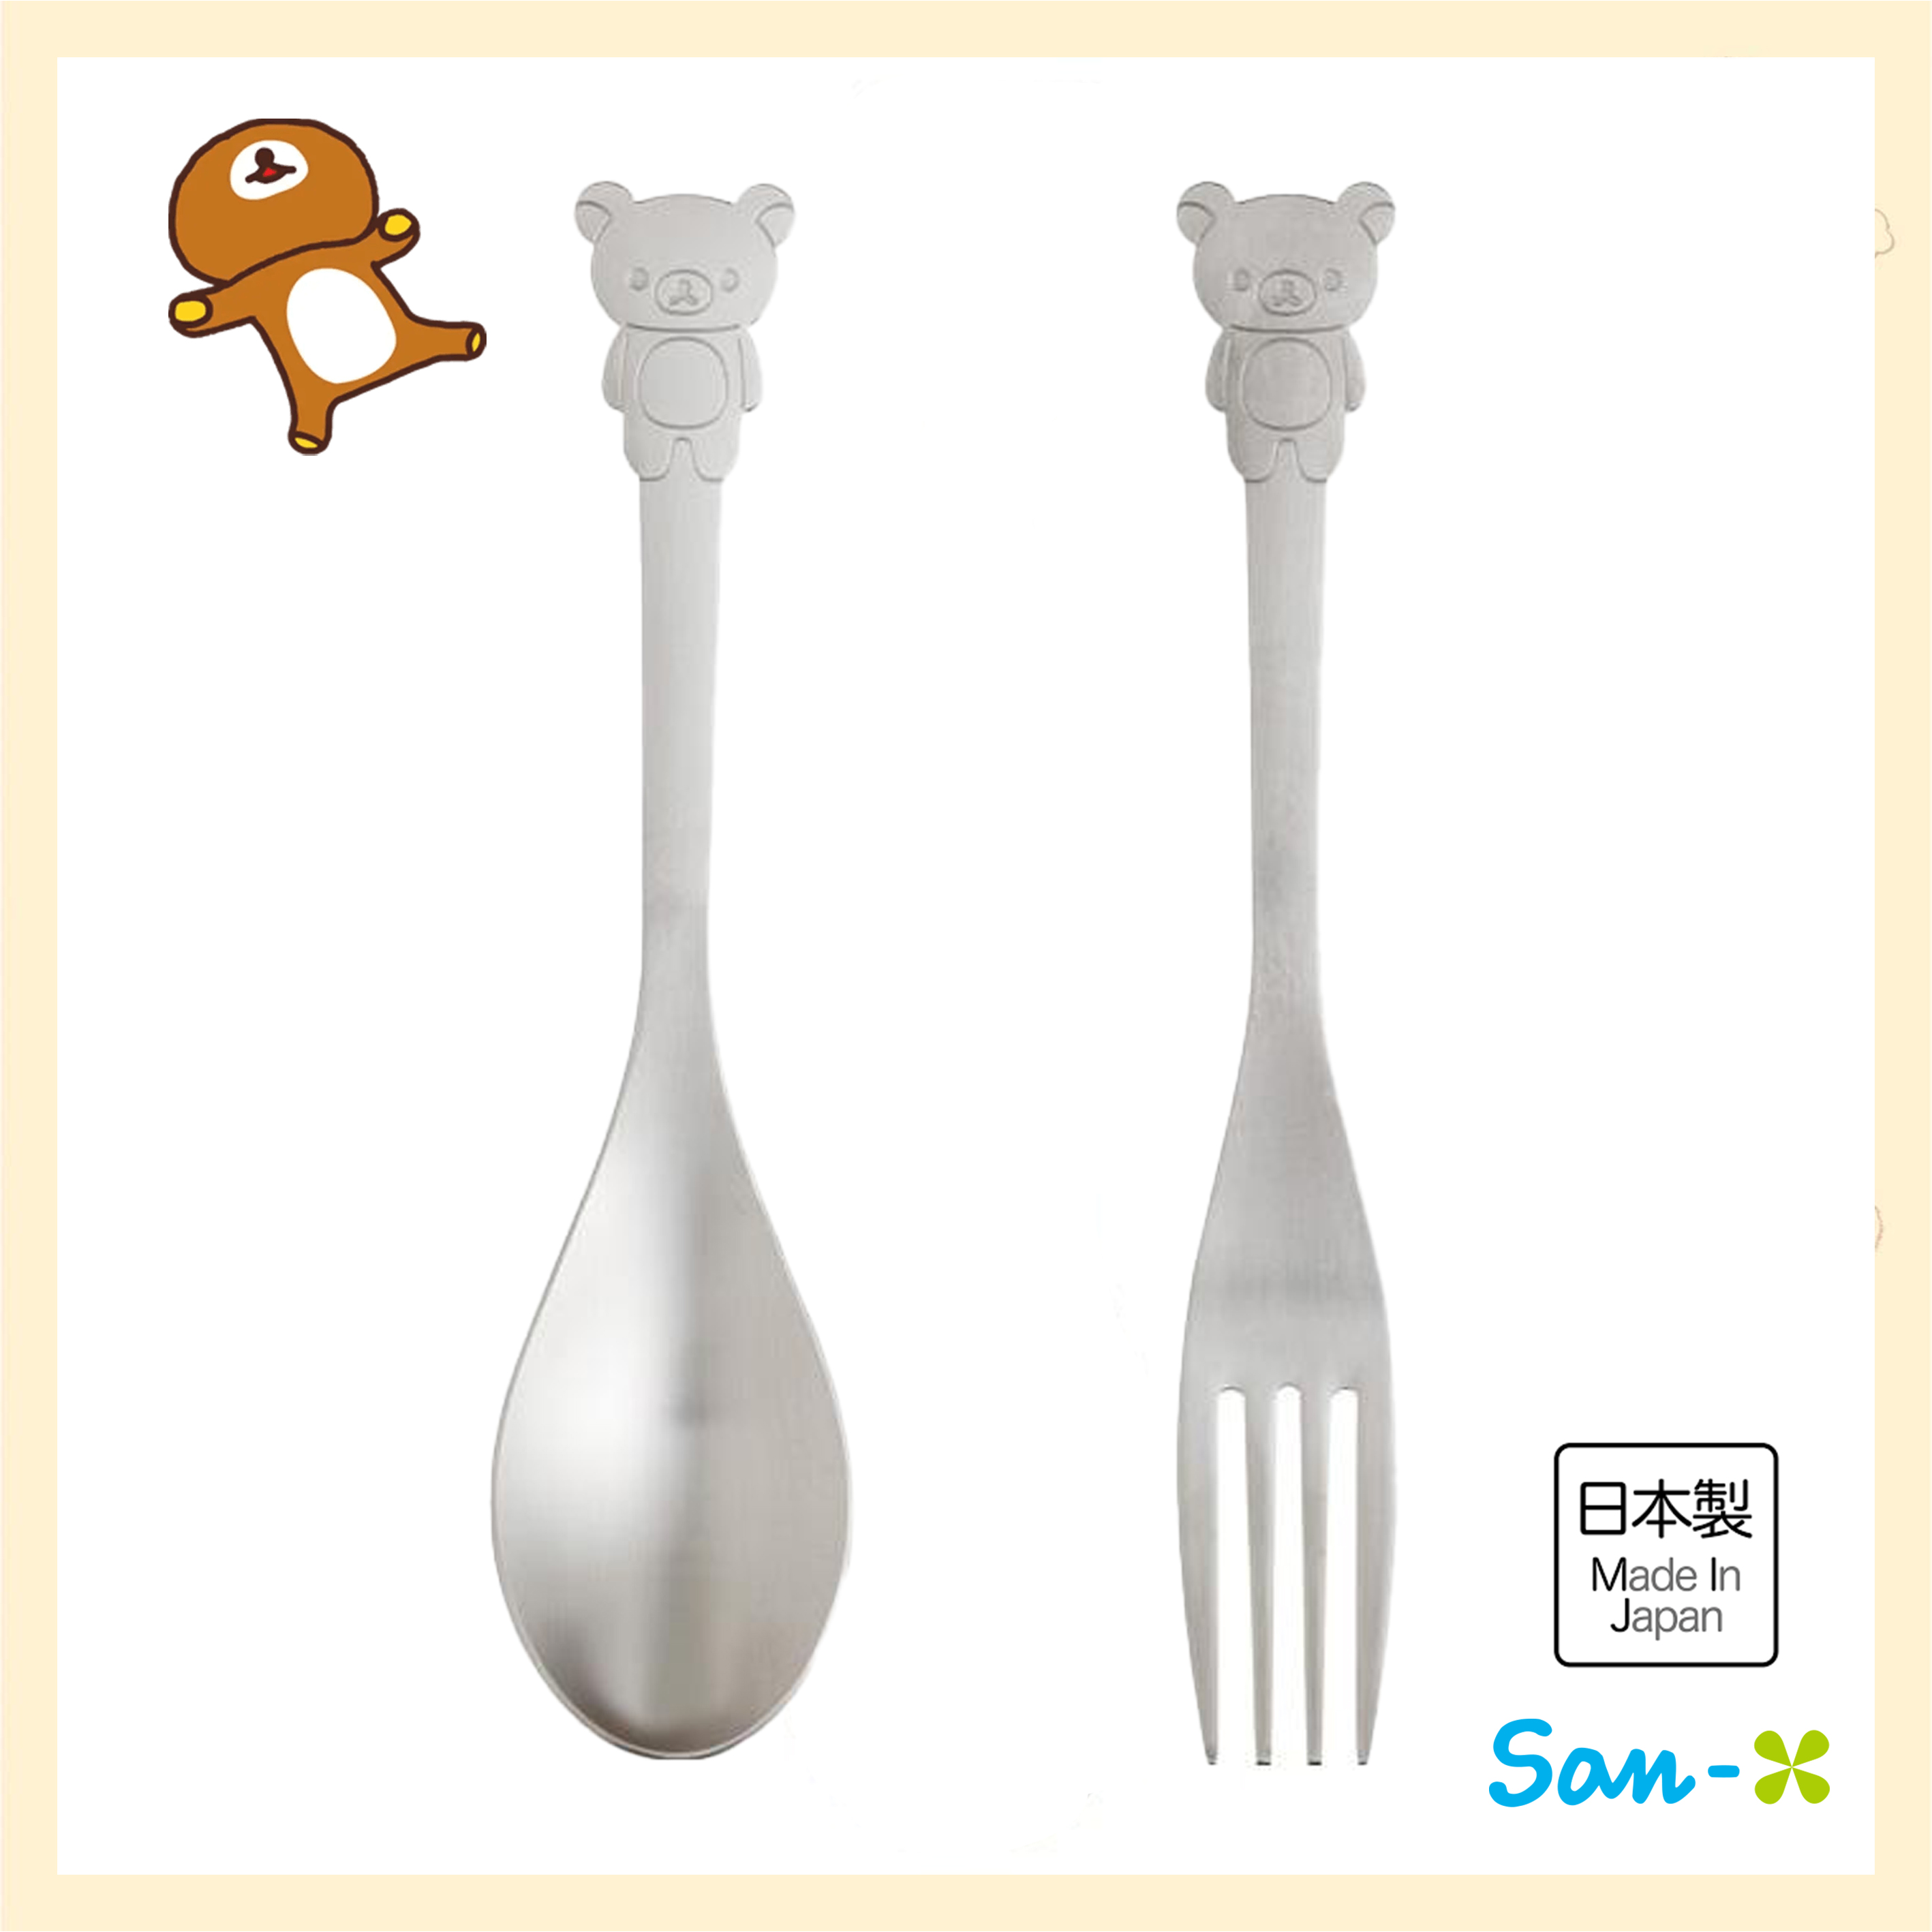 不鏽鋼湯匙&叉子-拉拉熊 Rilakkuma san-x 日本進口正版授權